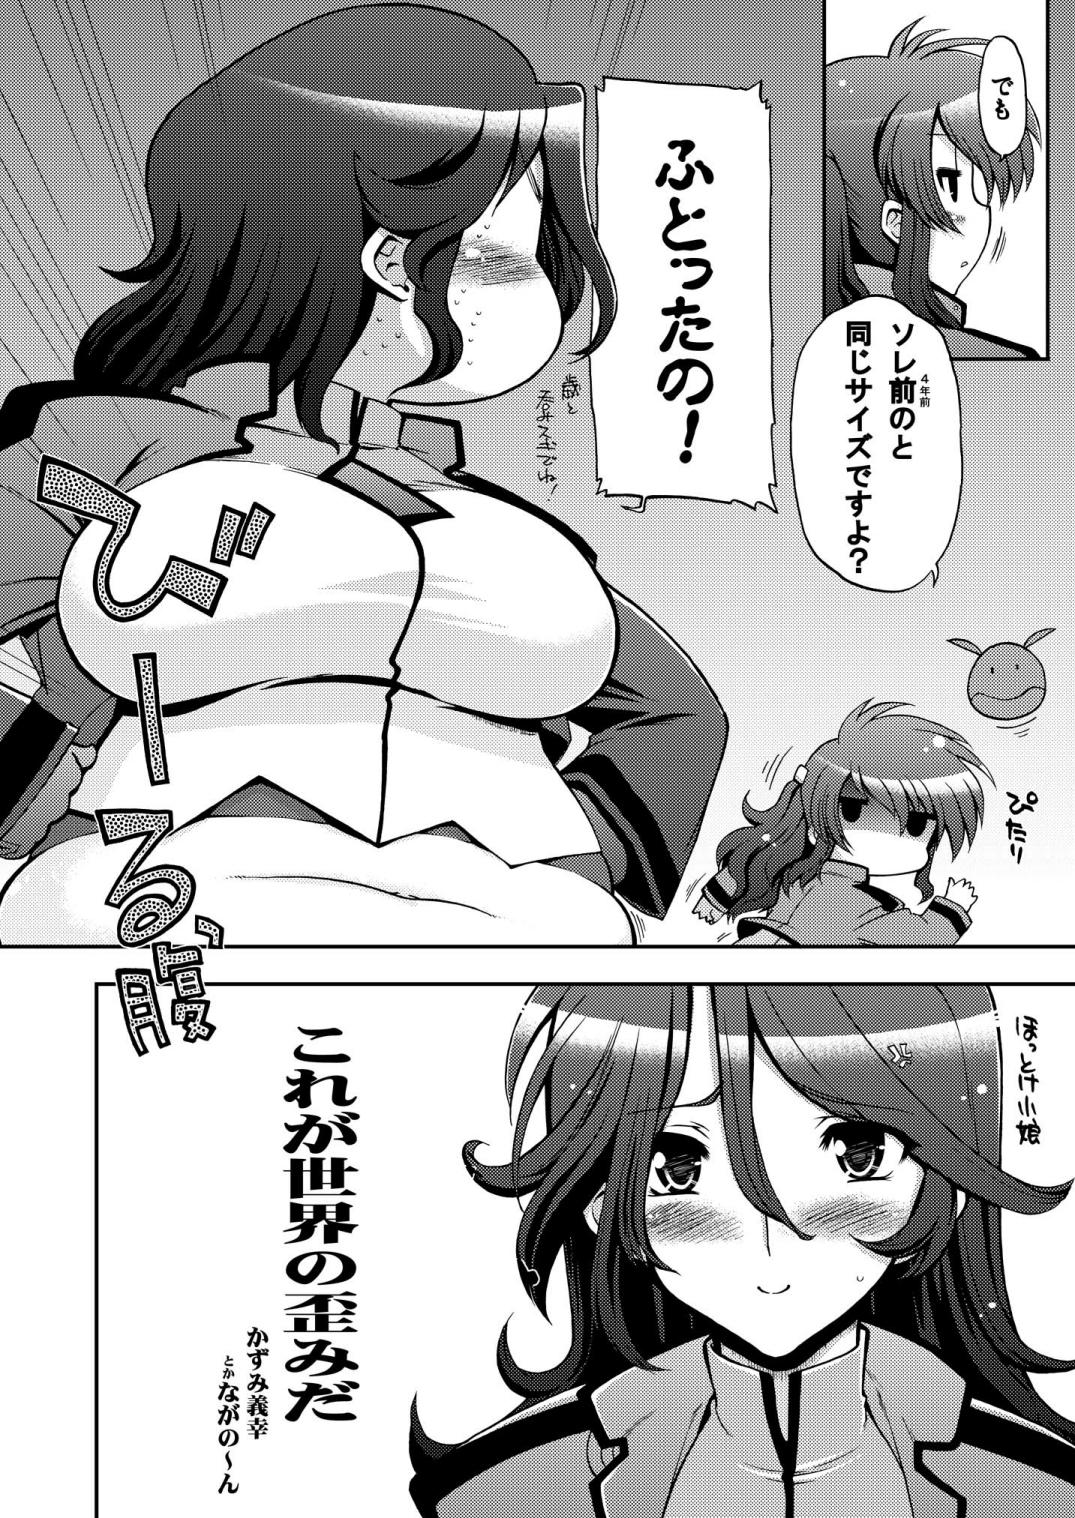 Emo Korega Sekai no Hizumida - Gundam 00 Chile - Page 5